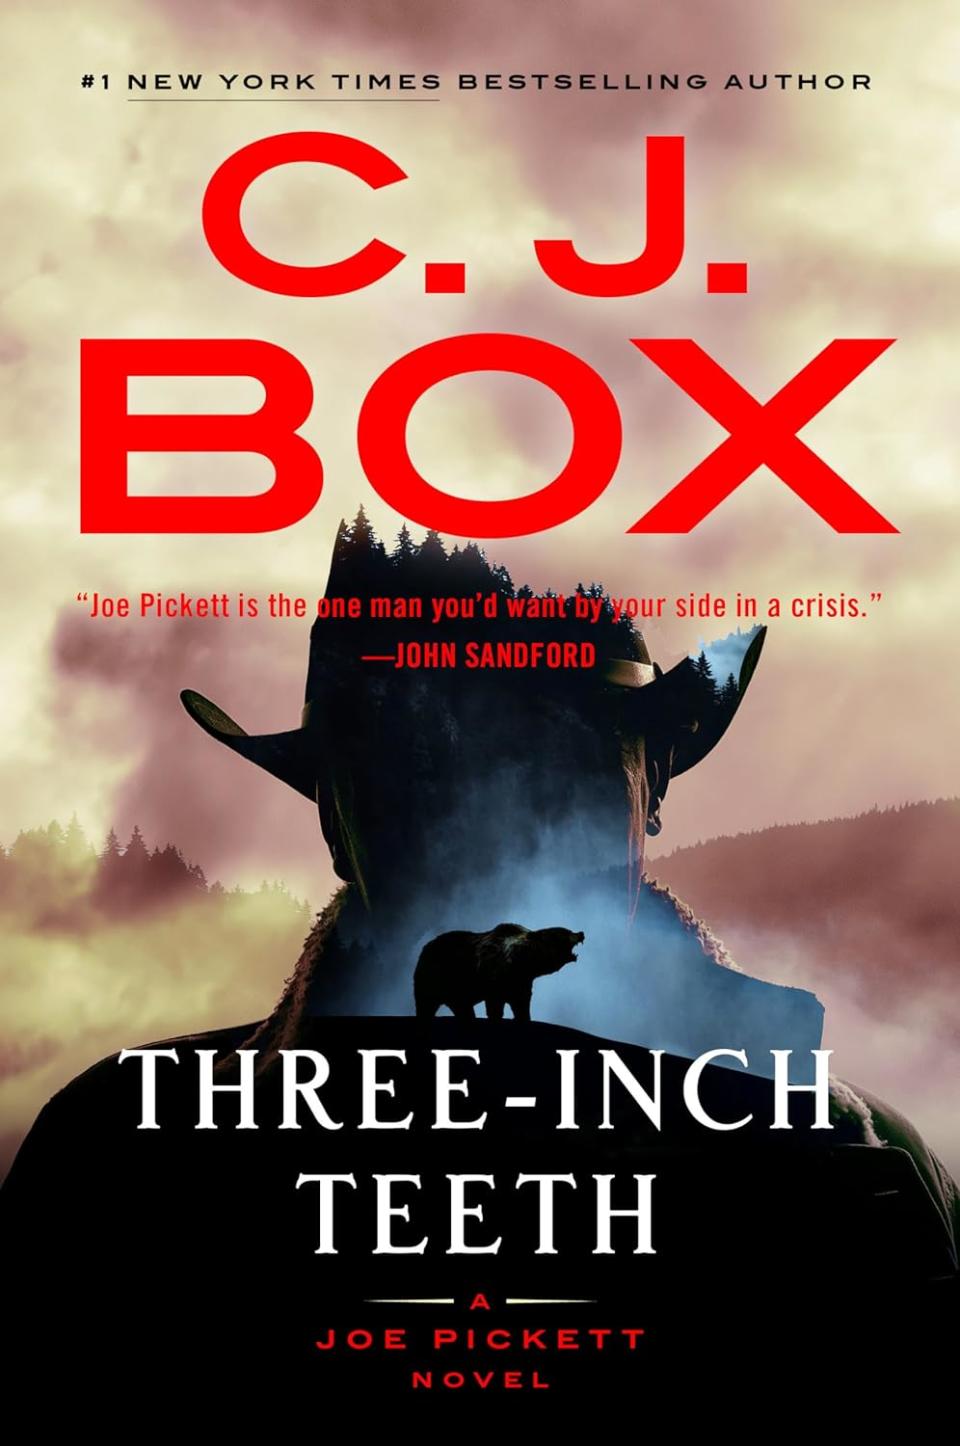 "Three-Inch Teeth" by C.J. Box